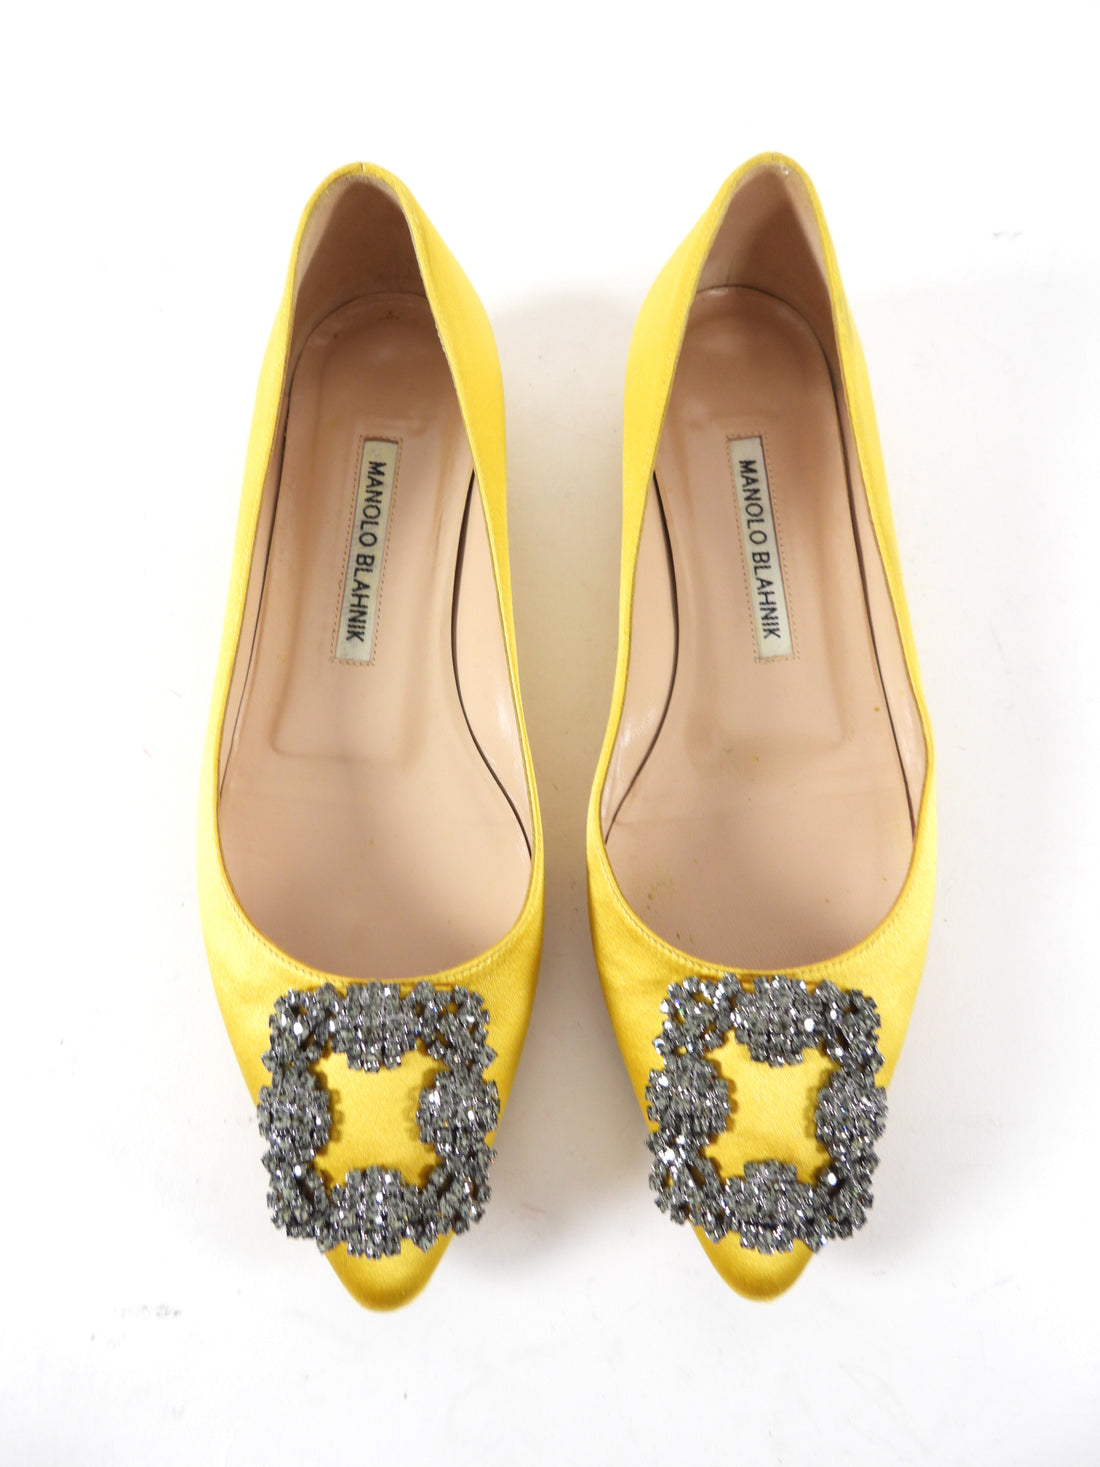 Manolo Blahnik Mustard Yellow Satin Hangisi Flat Shoes - USA 6